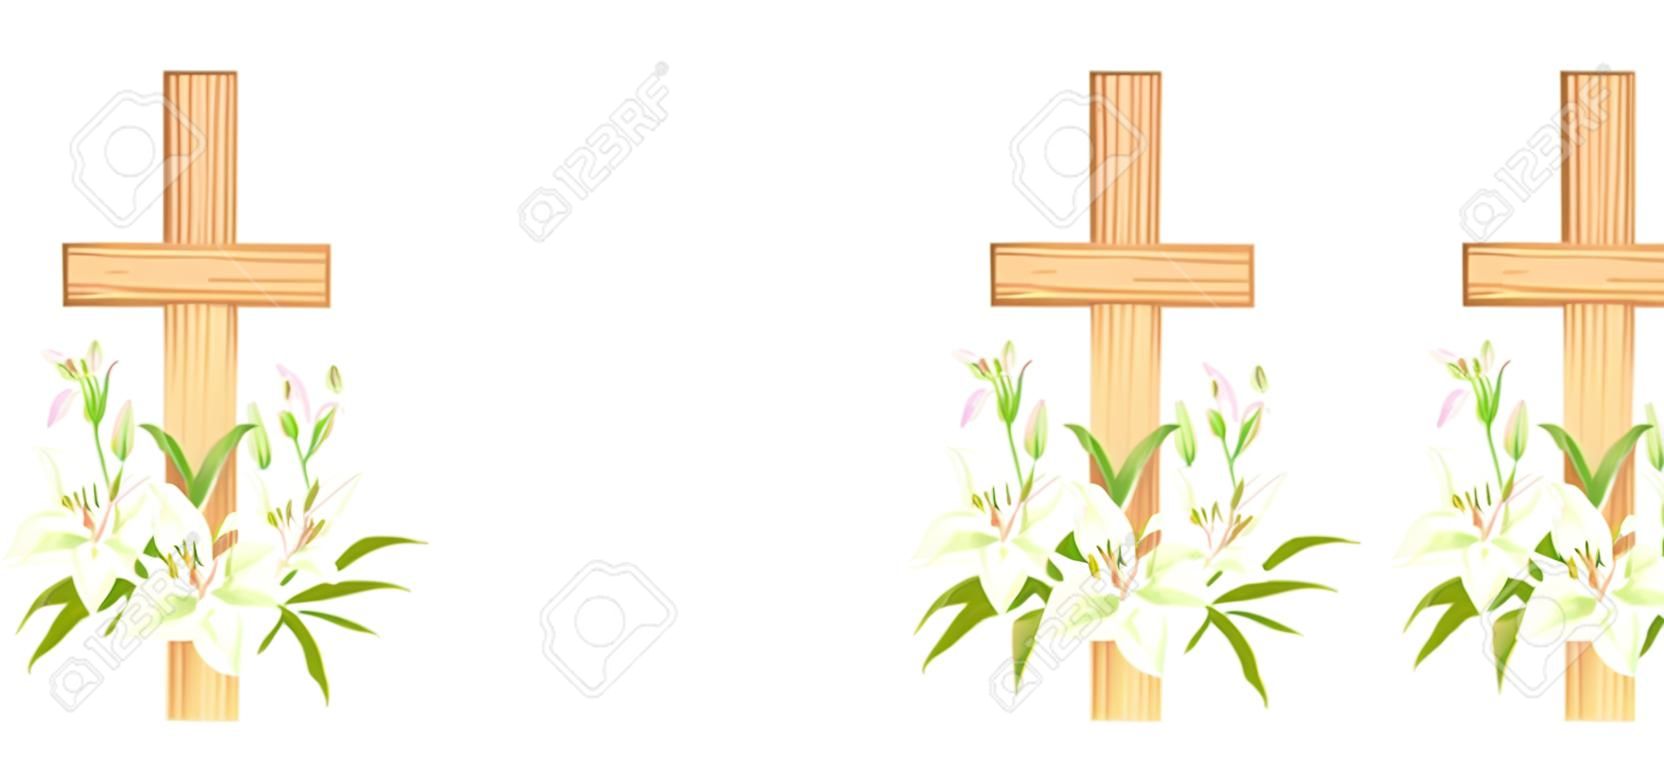 Krzyż z liliami. religijny symbol wielkanocny. kolorowy zestaw krzyży z liliami i całunem. element projektu plakatu niedzieli wielkanocnej, karta, pozdrowienia. odosobniony. ilustracja wektorowa